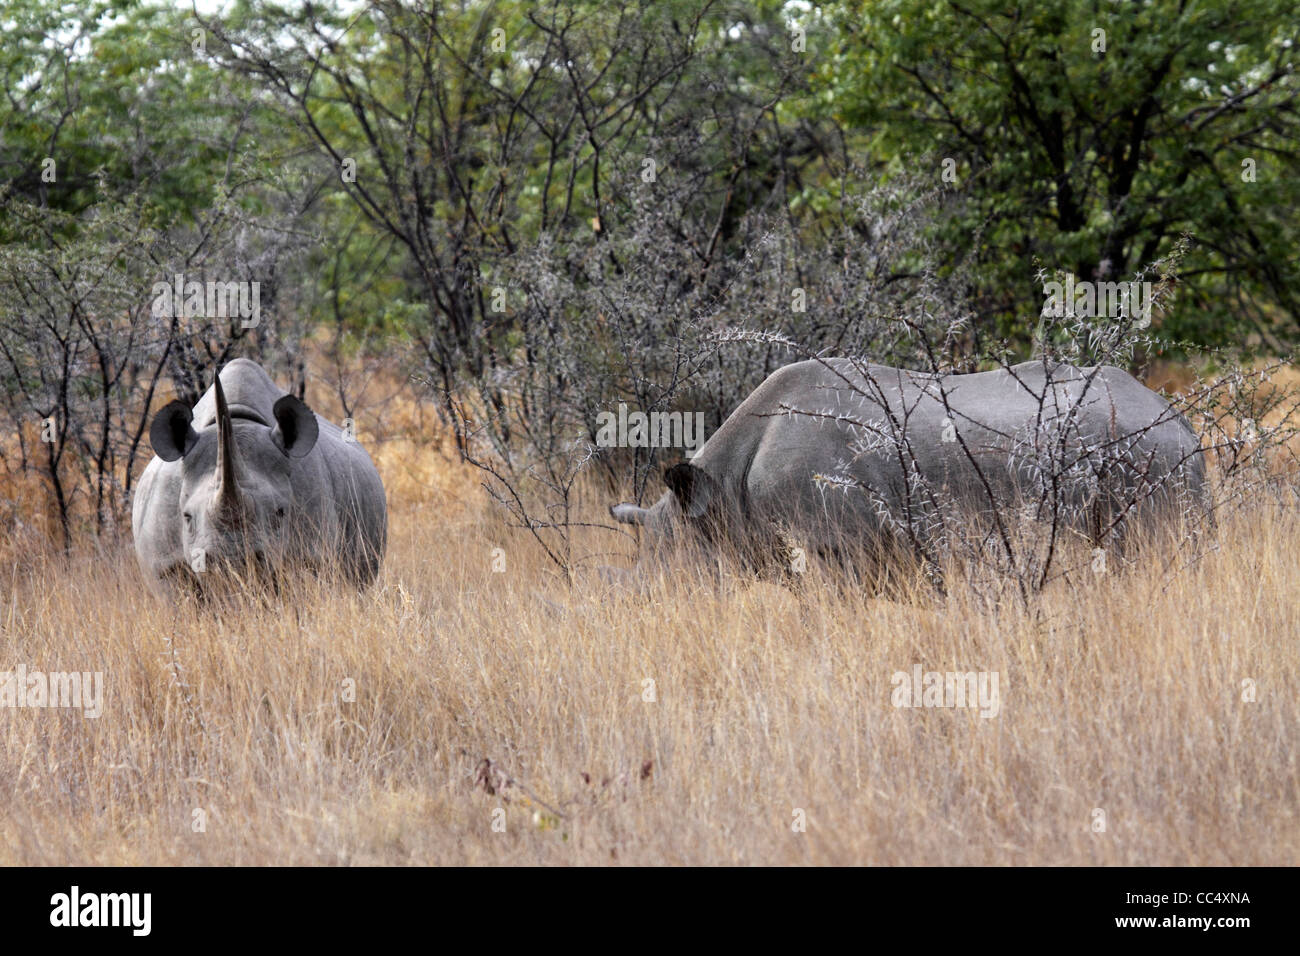 Black rhinos in bush in Namibia Stock Photo